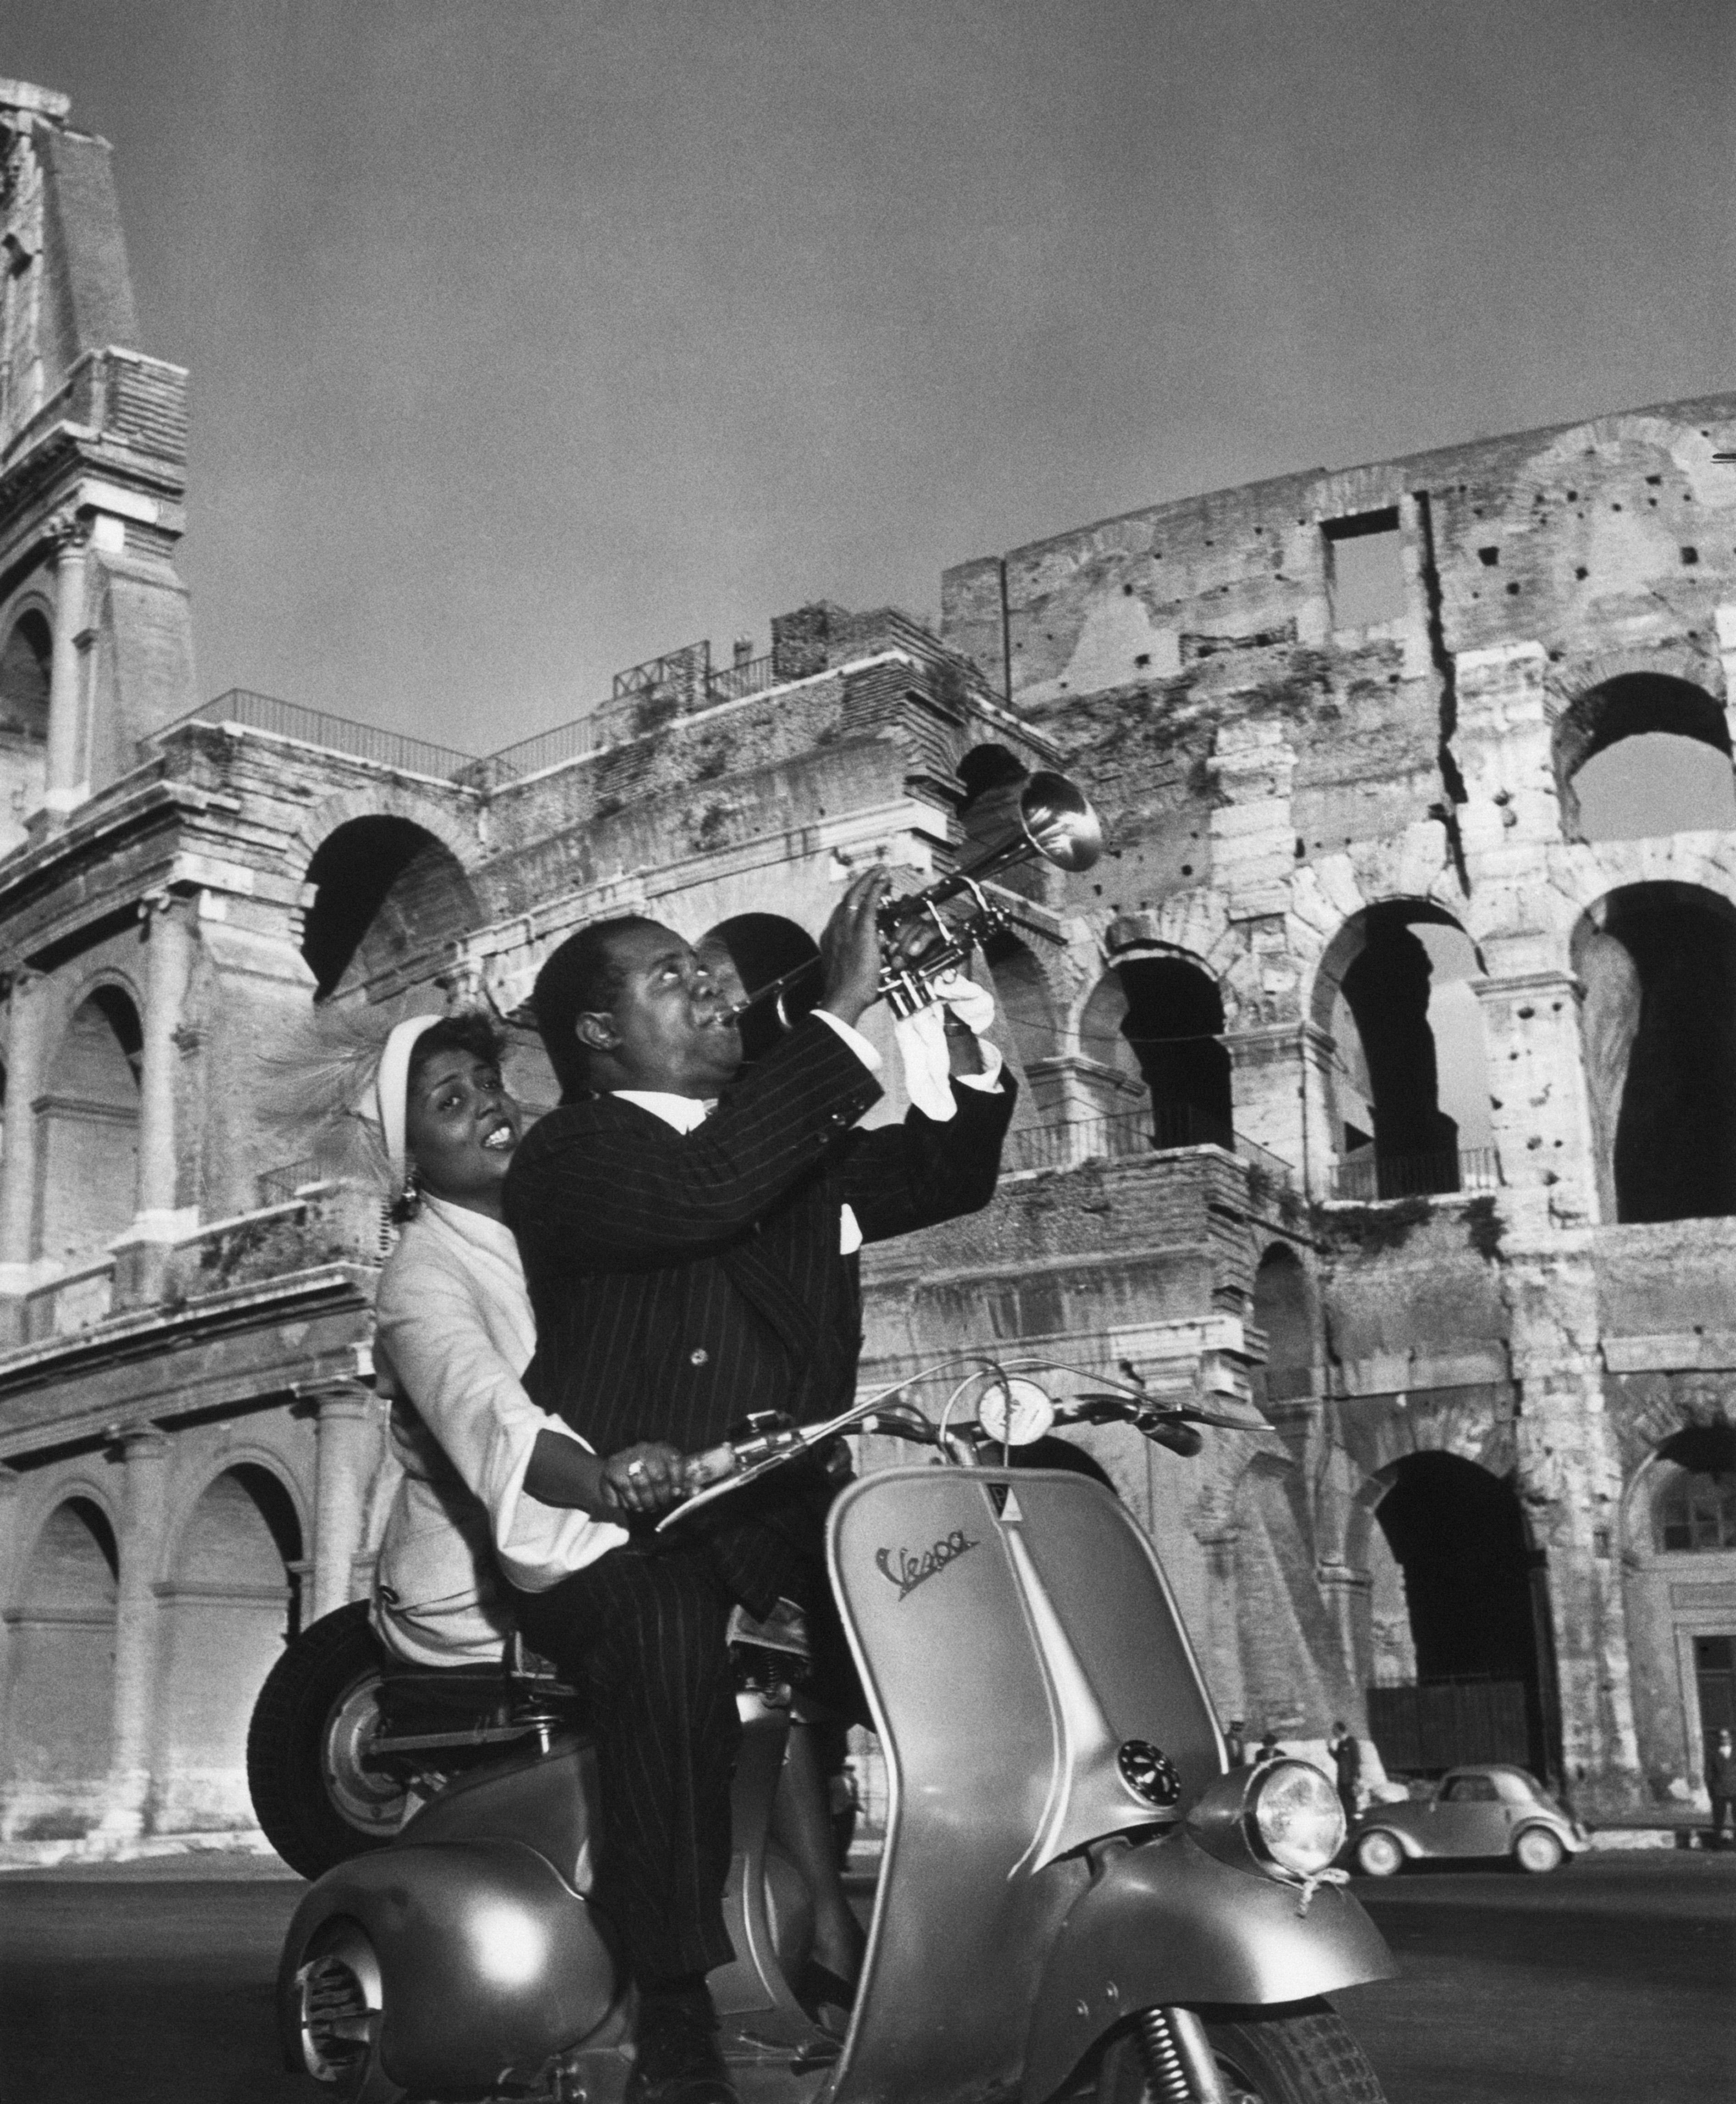 Schlanke Aarons
Jazz-Roller
1949 (später gedruckt)
Silber-Gelatine-Druck
Nachlasssignatur gestempelte Auflage von 150 Stück 
mit Echtheitszertifikat

Lucille Brown übernimmt die Kontrolle über den Vespa-Roller, während ihr Ehemann Louis Armstrong